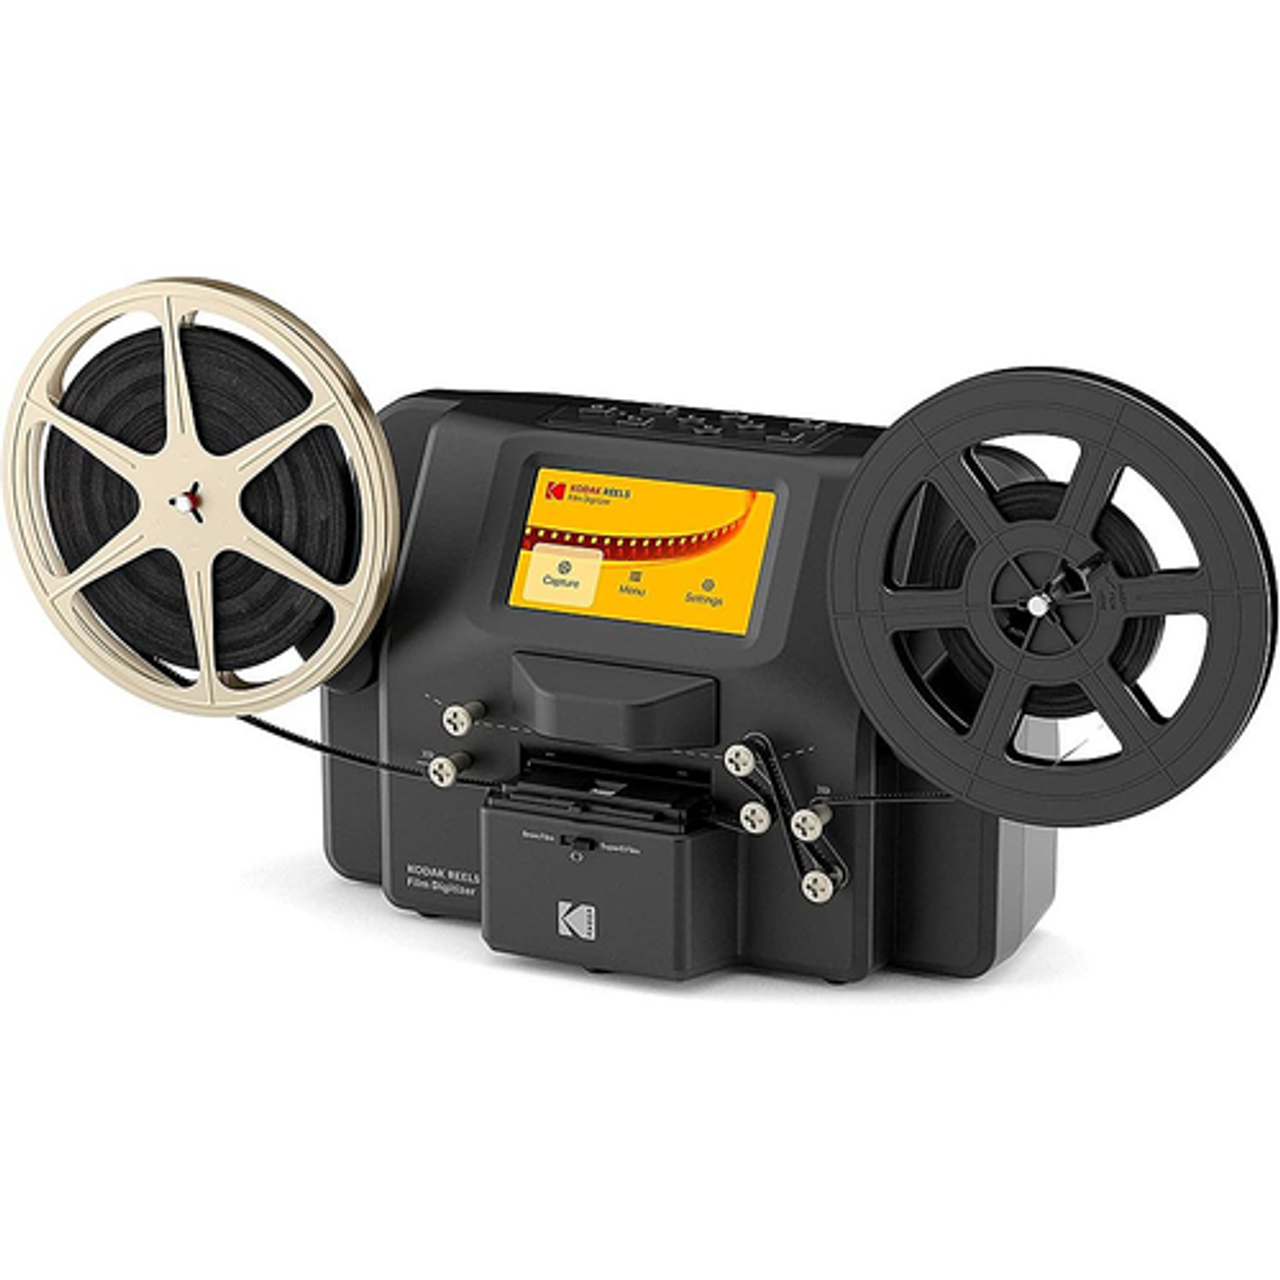 Kodak - REELS Portable Scanner, Film Digitizer, Photo Scanner & Slide Viewer, 8mm & Super 8 Films Converter - Black